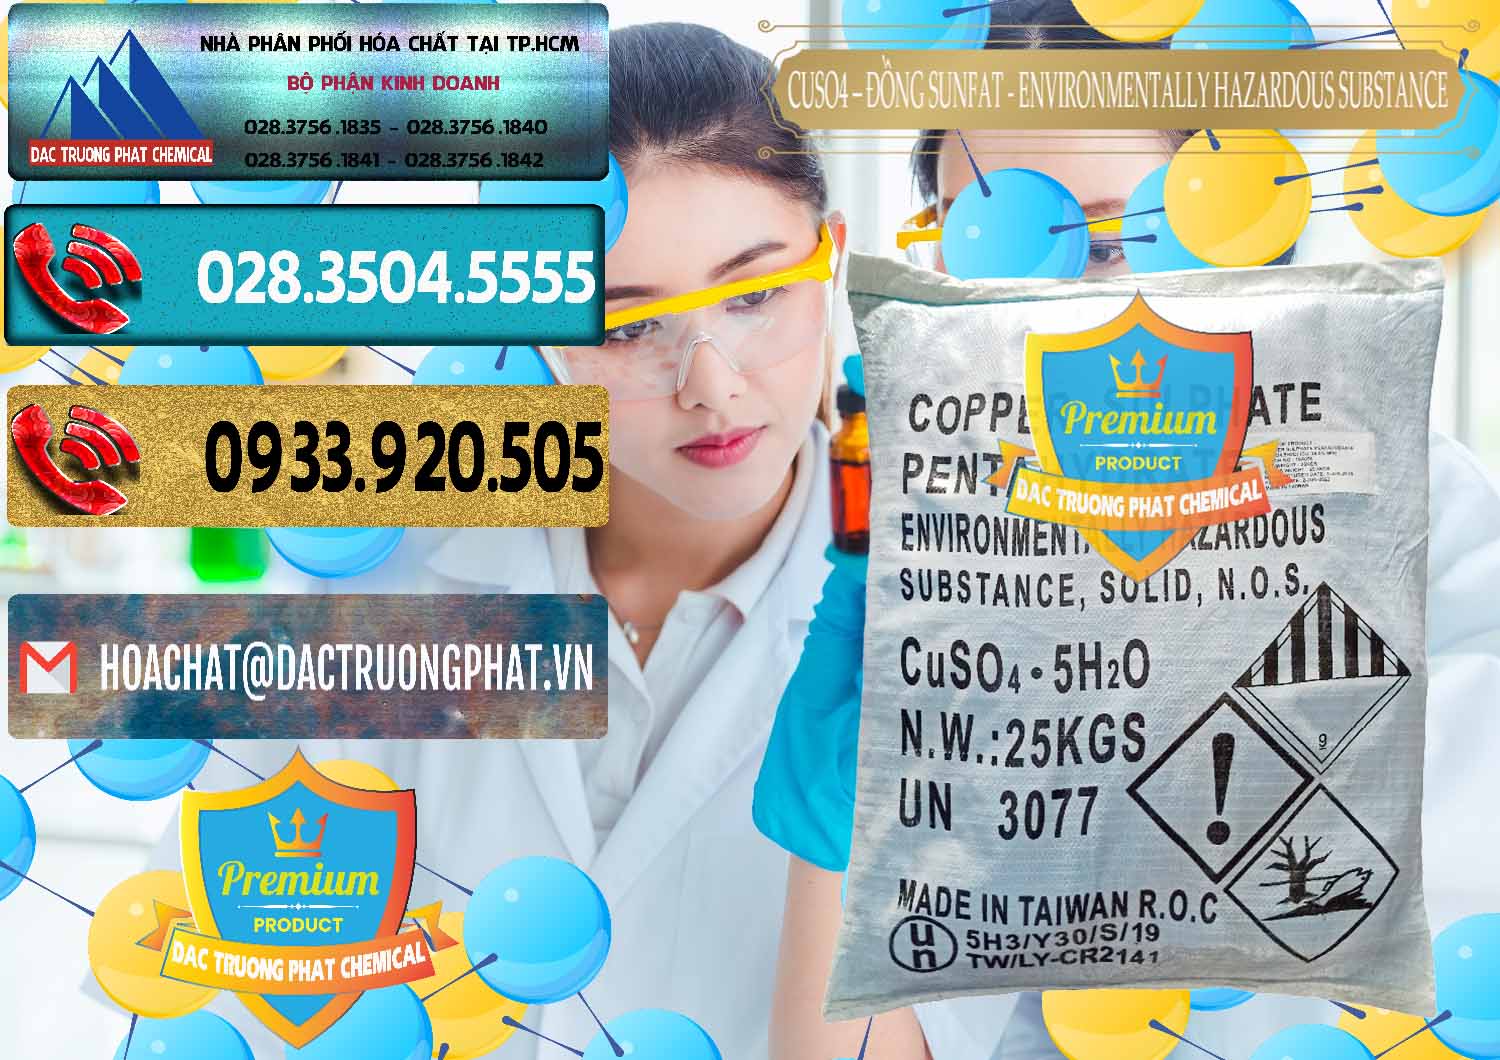 Công ty nhập khẩu và bán CuSO4 – Đồng Sunfat Đài Loan Taiwan - 0059 - Cty phân phối - cung cấp hóa chất tại TP.HCM - hoachatdetnhuom.com